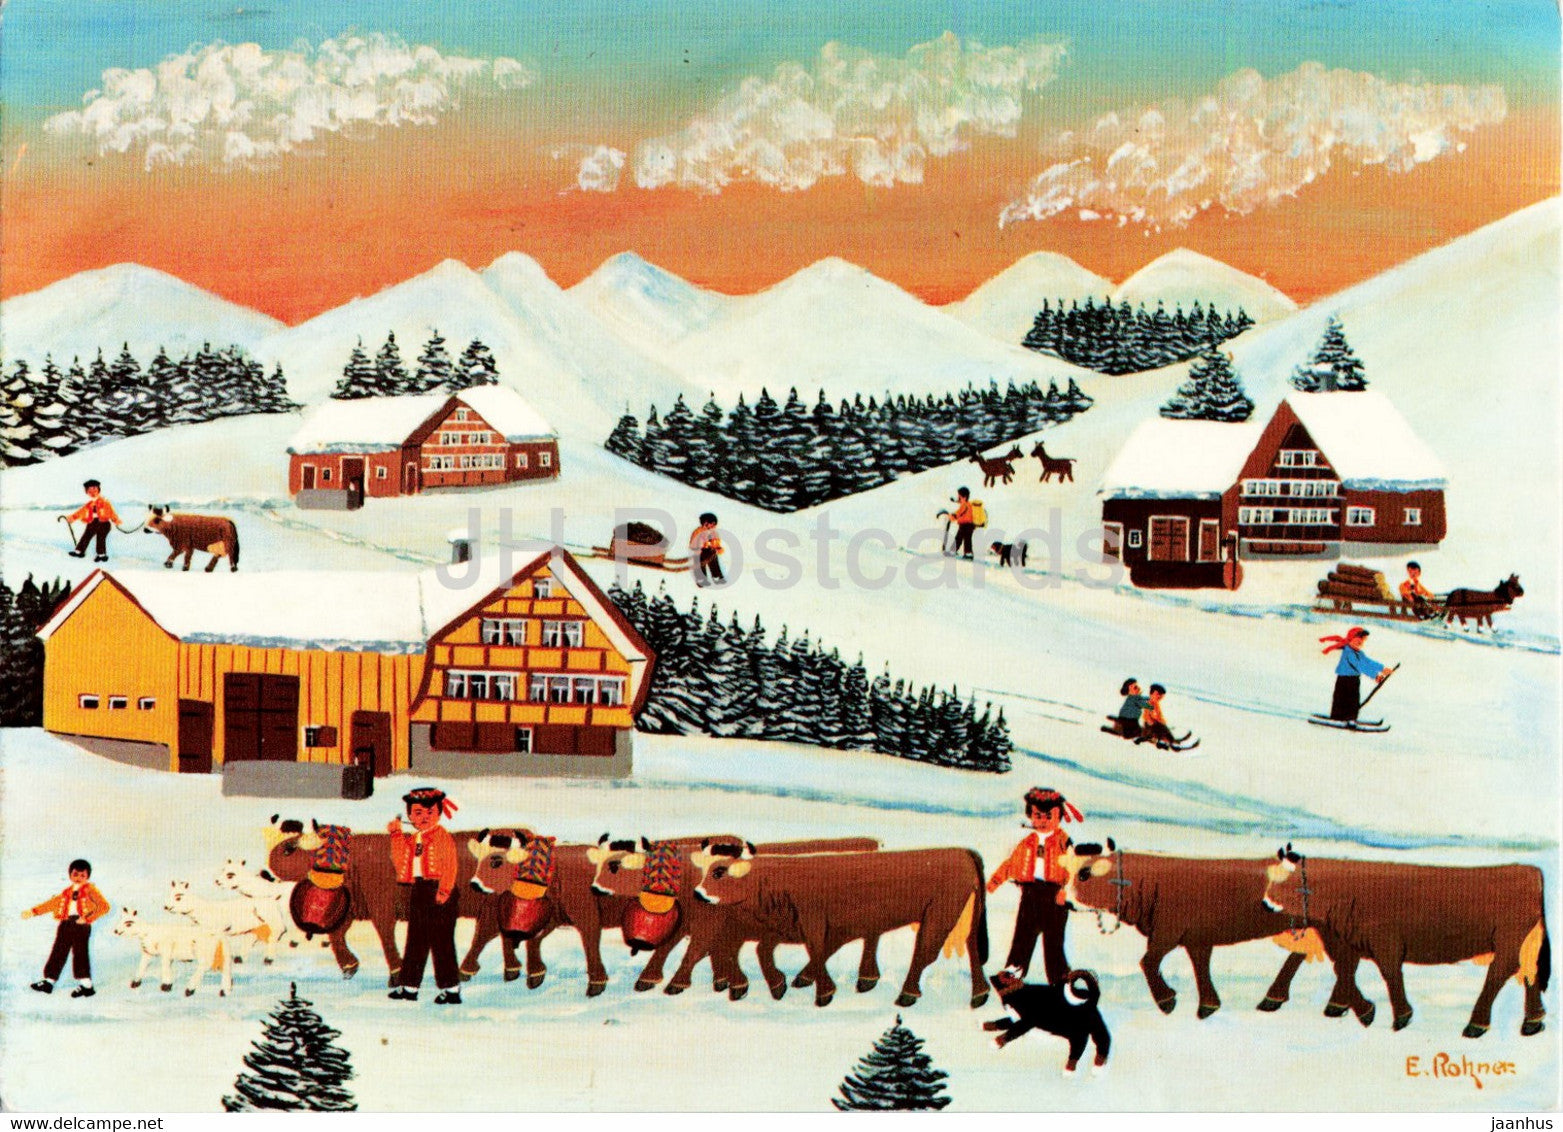 Winter im Appenzellerland by Ernst Rohner - illustration - animals - cow - Switzerland - unused - JH Postcards